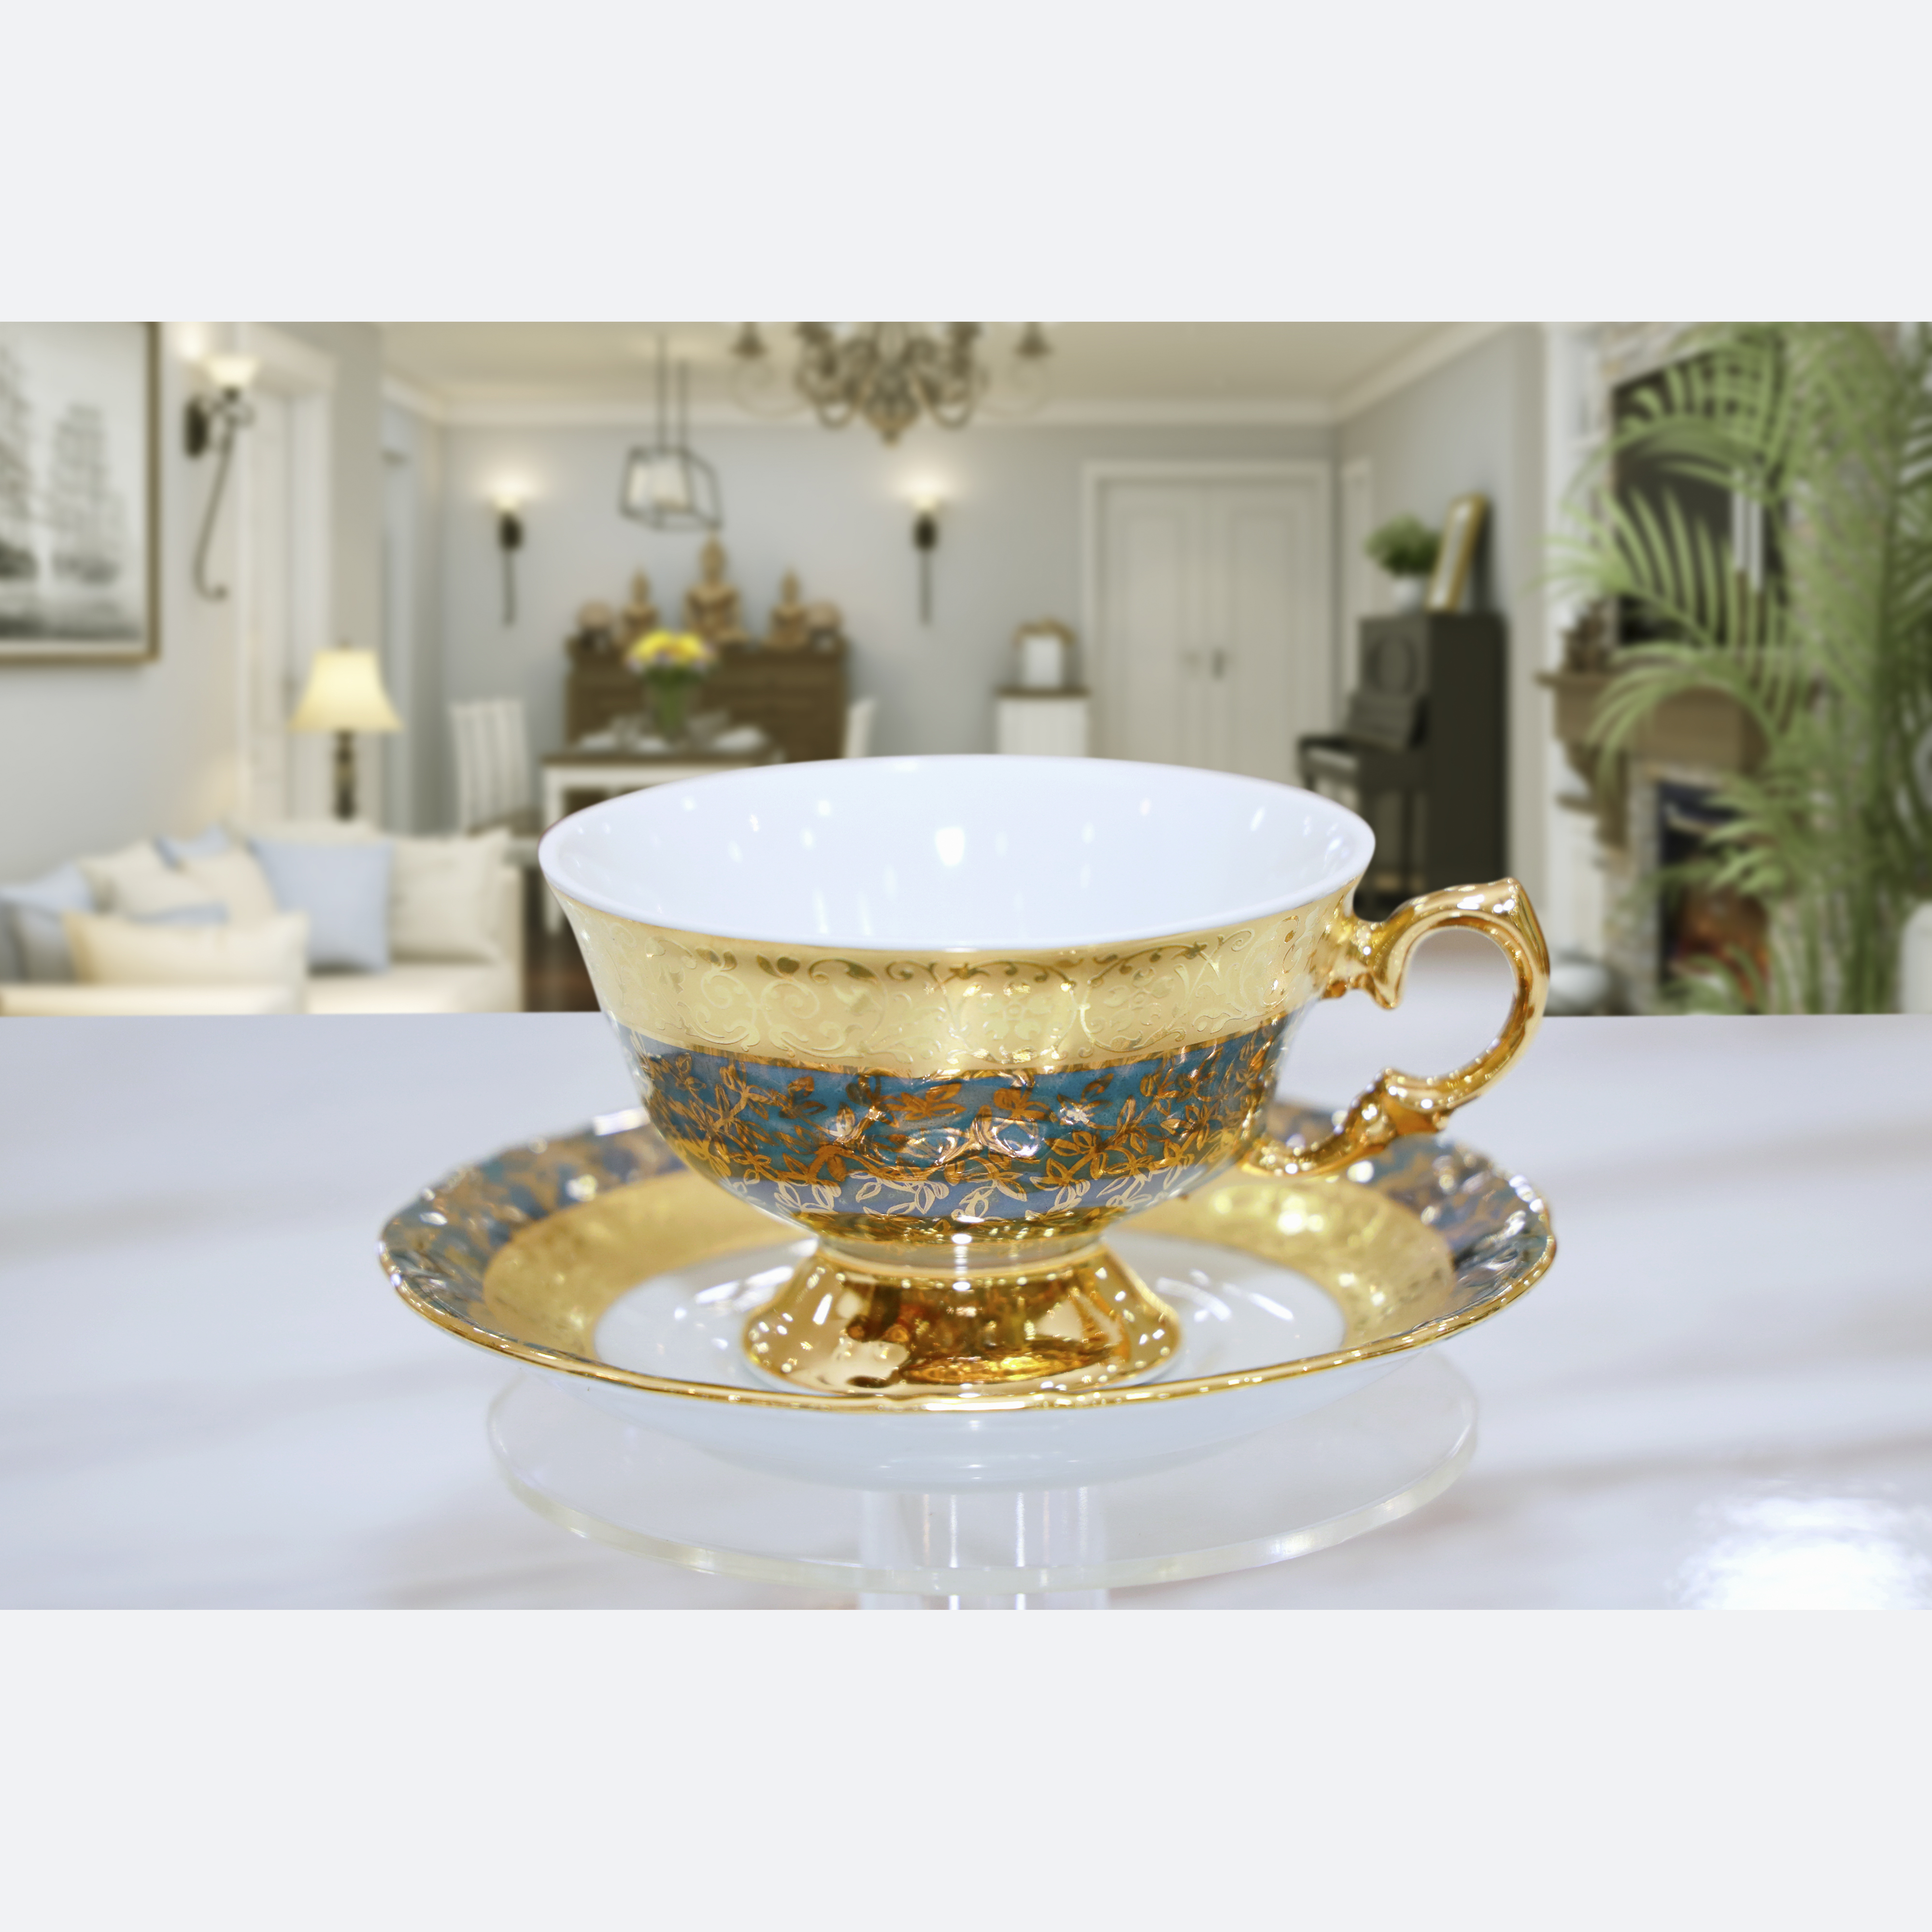 Bộ bình trà sứ Tiệp cao cấp mạ vàng 3-086, màu xanh xanh lá đậm, phong cách tân cổ điển sang trọng